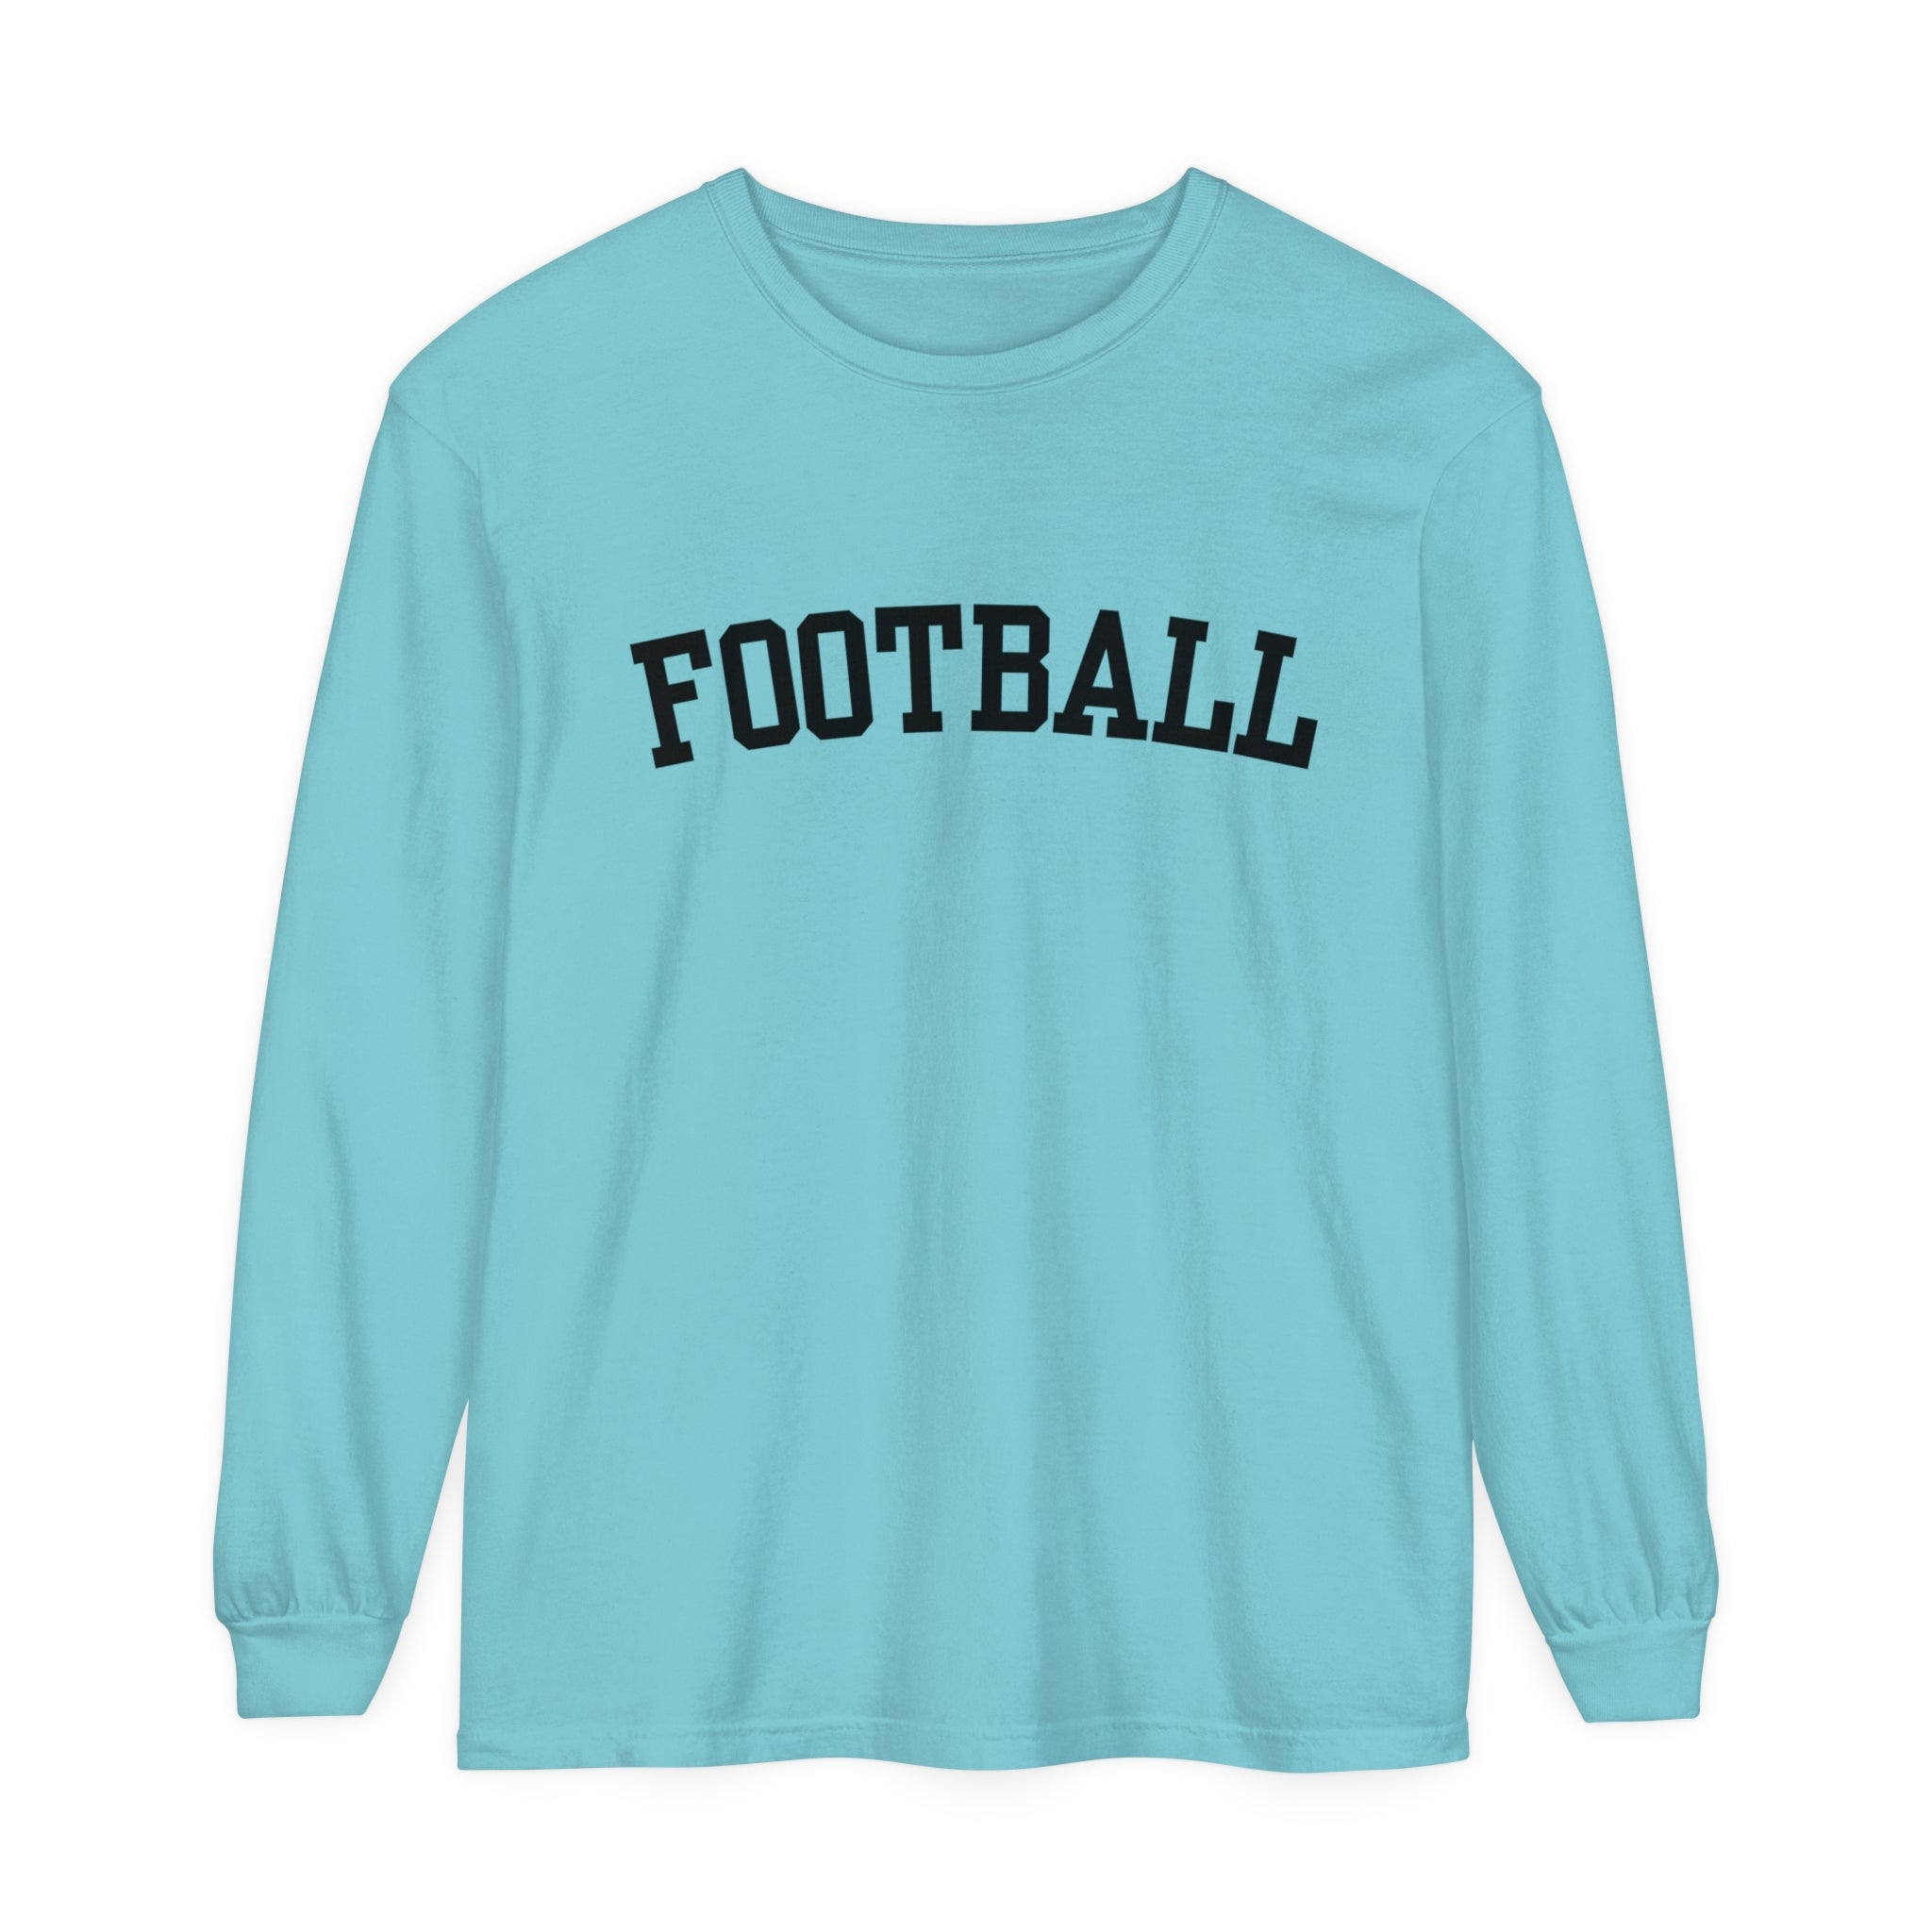 Football Unisex Long Sleeve T-Shirt Black Lettering